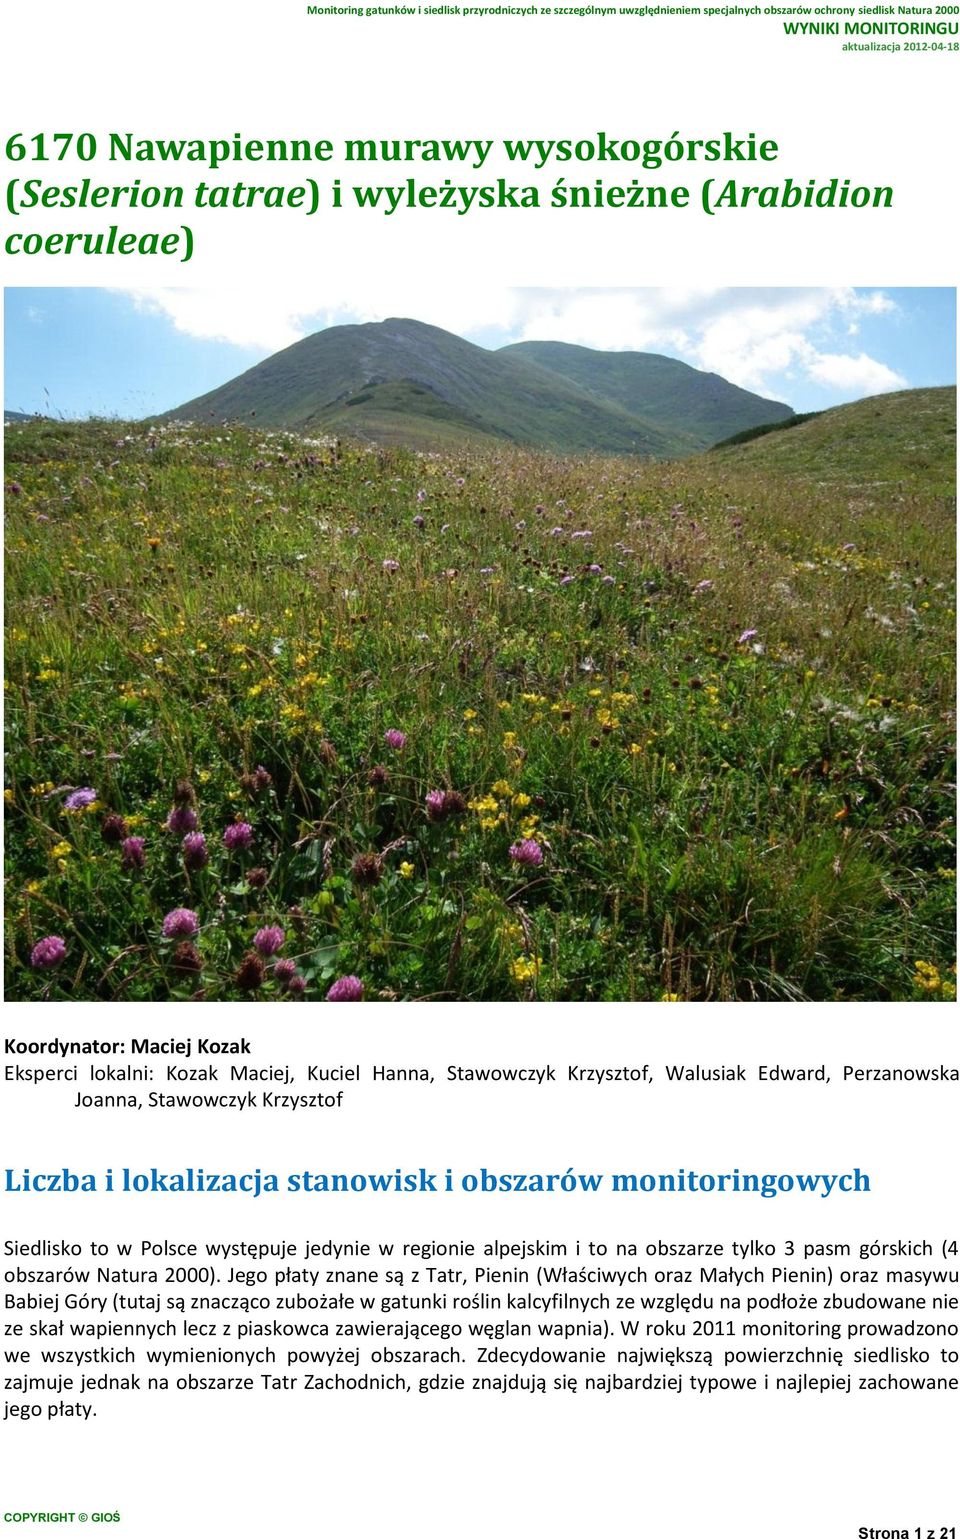 3 pasm górskich (4 obszarów Natura 2000).